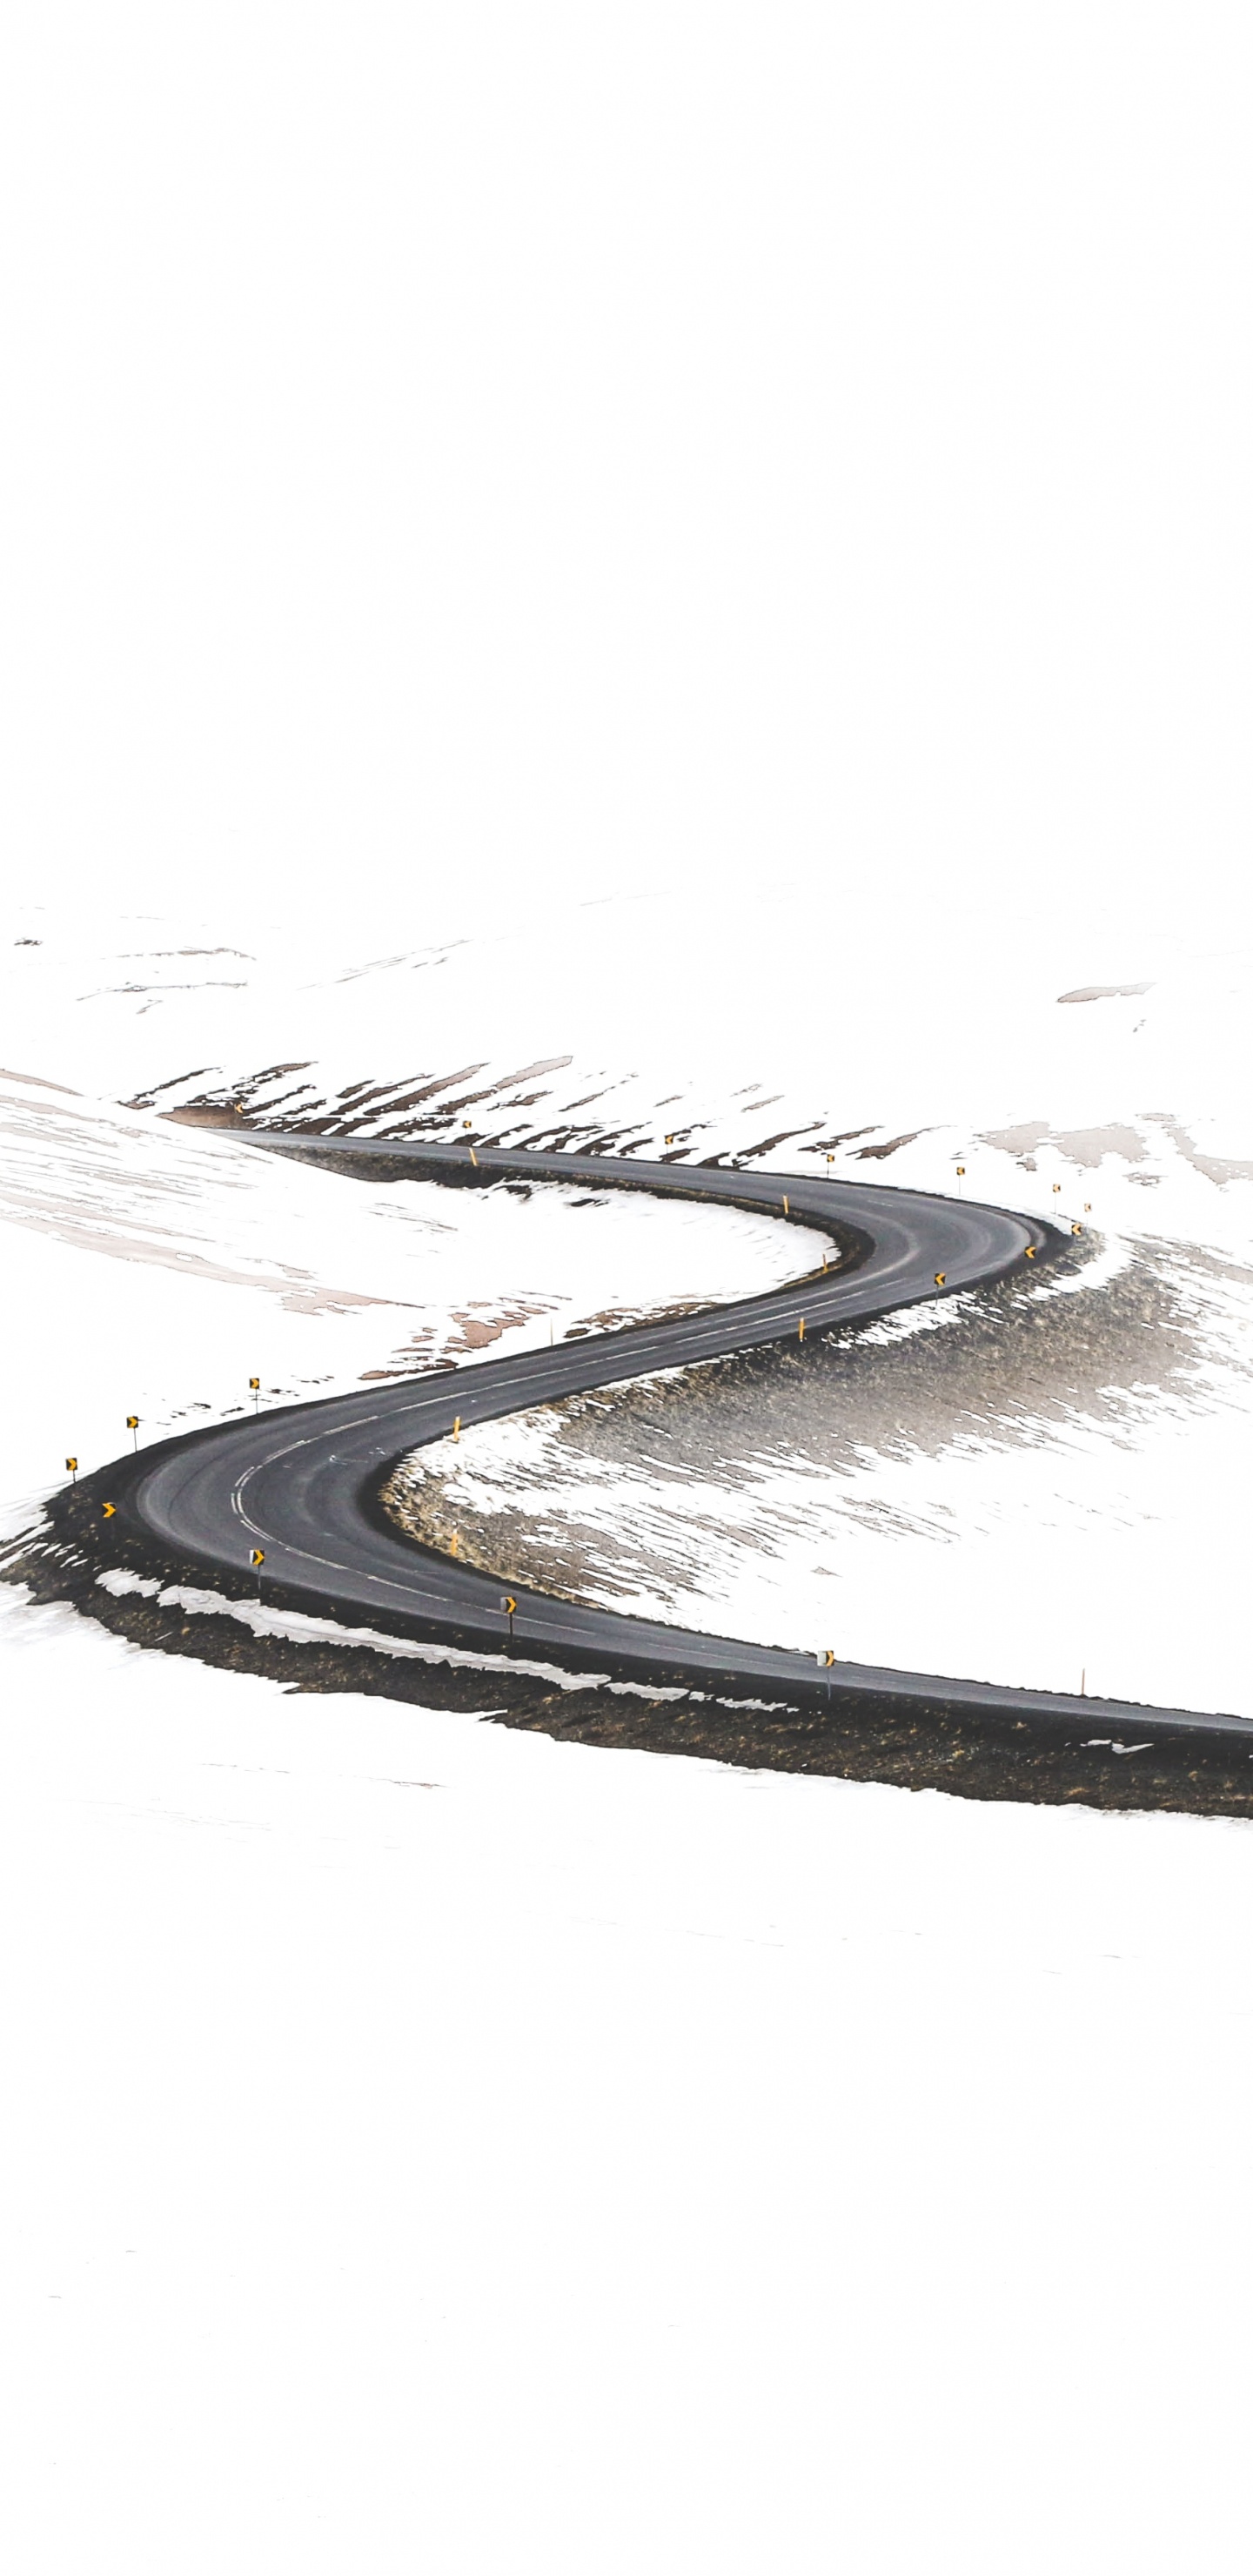 Road, Minimalismus, Zeichnung, Skizze, Design. Wallpaper in 1440x2960 Resolution